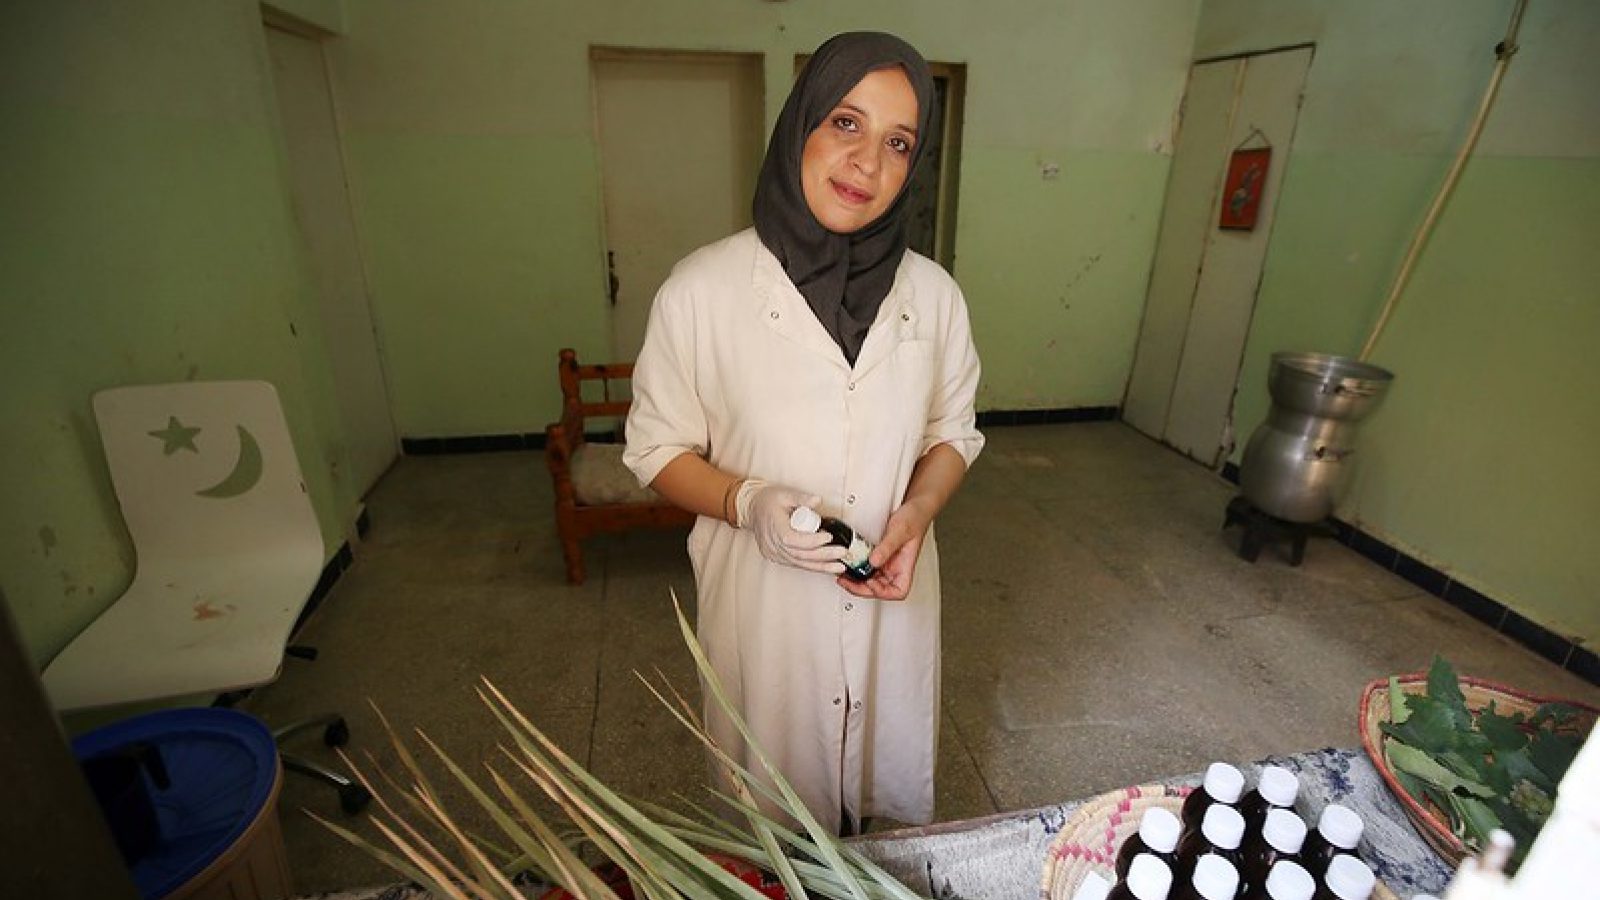 Amina Lakhdari preparing vinegars